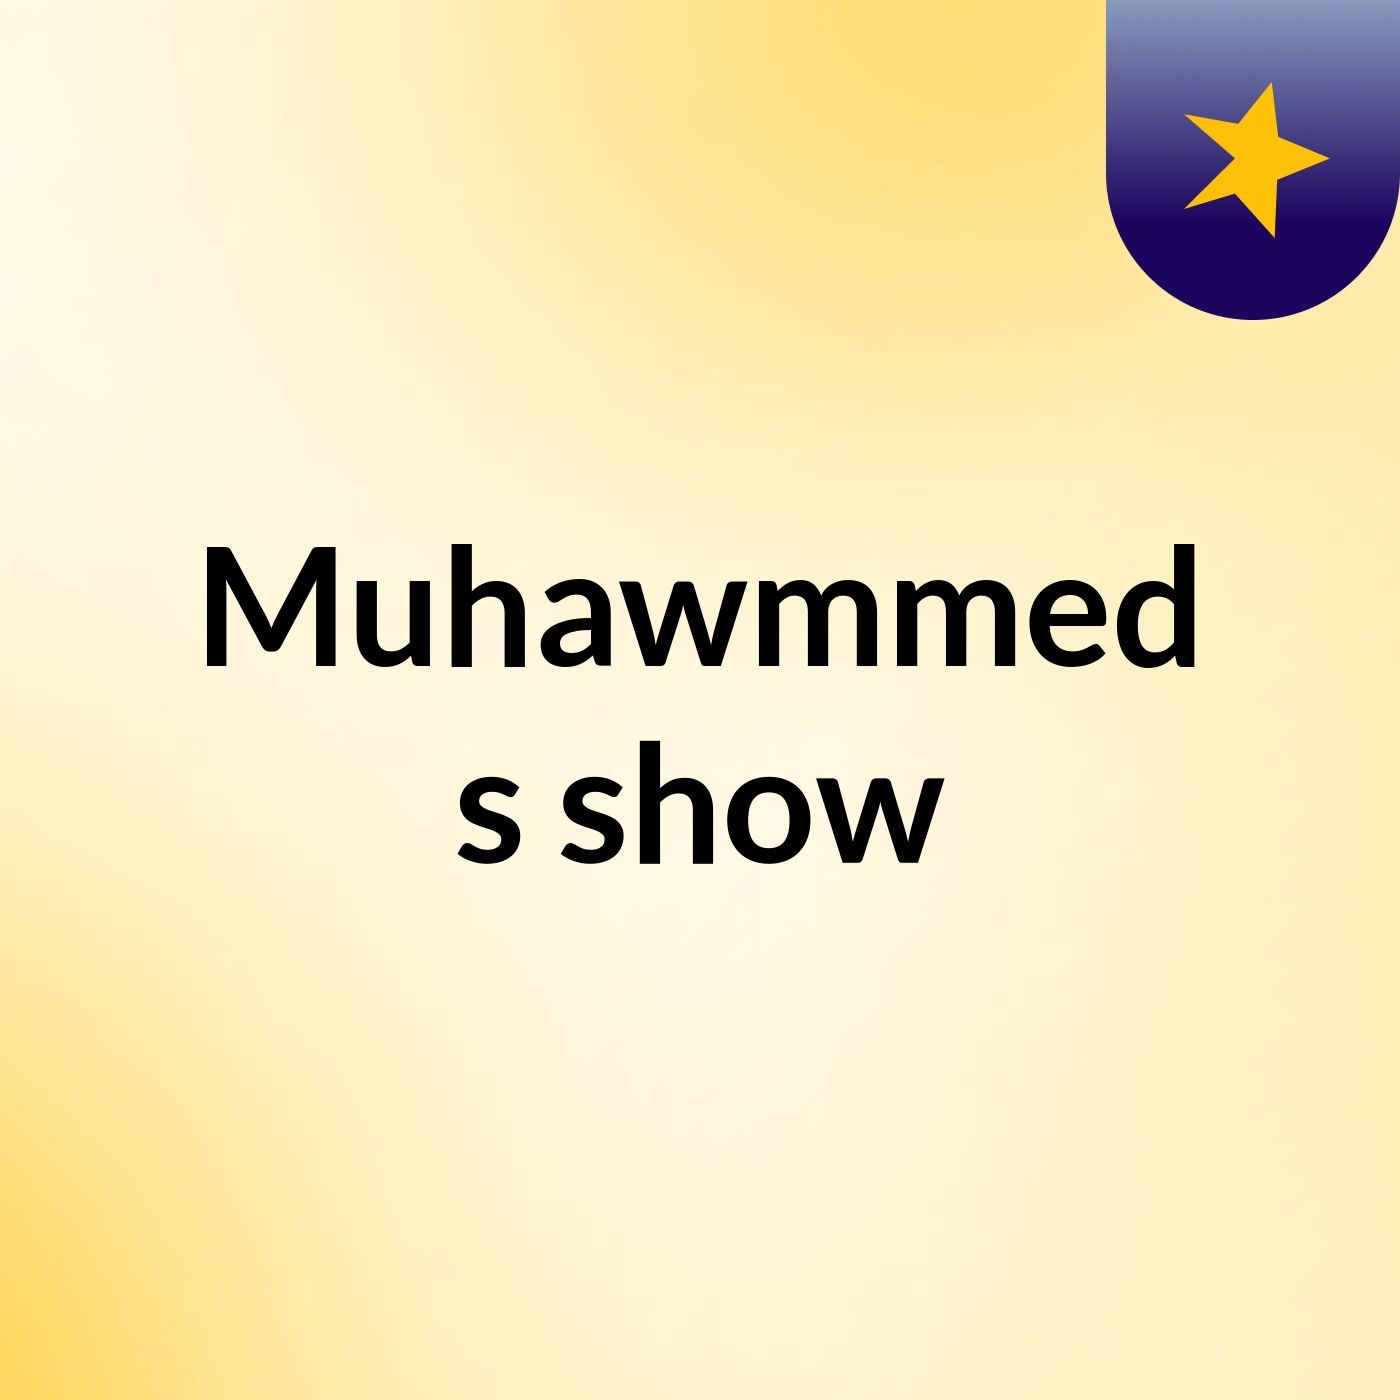 Muhawmmed's show